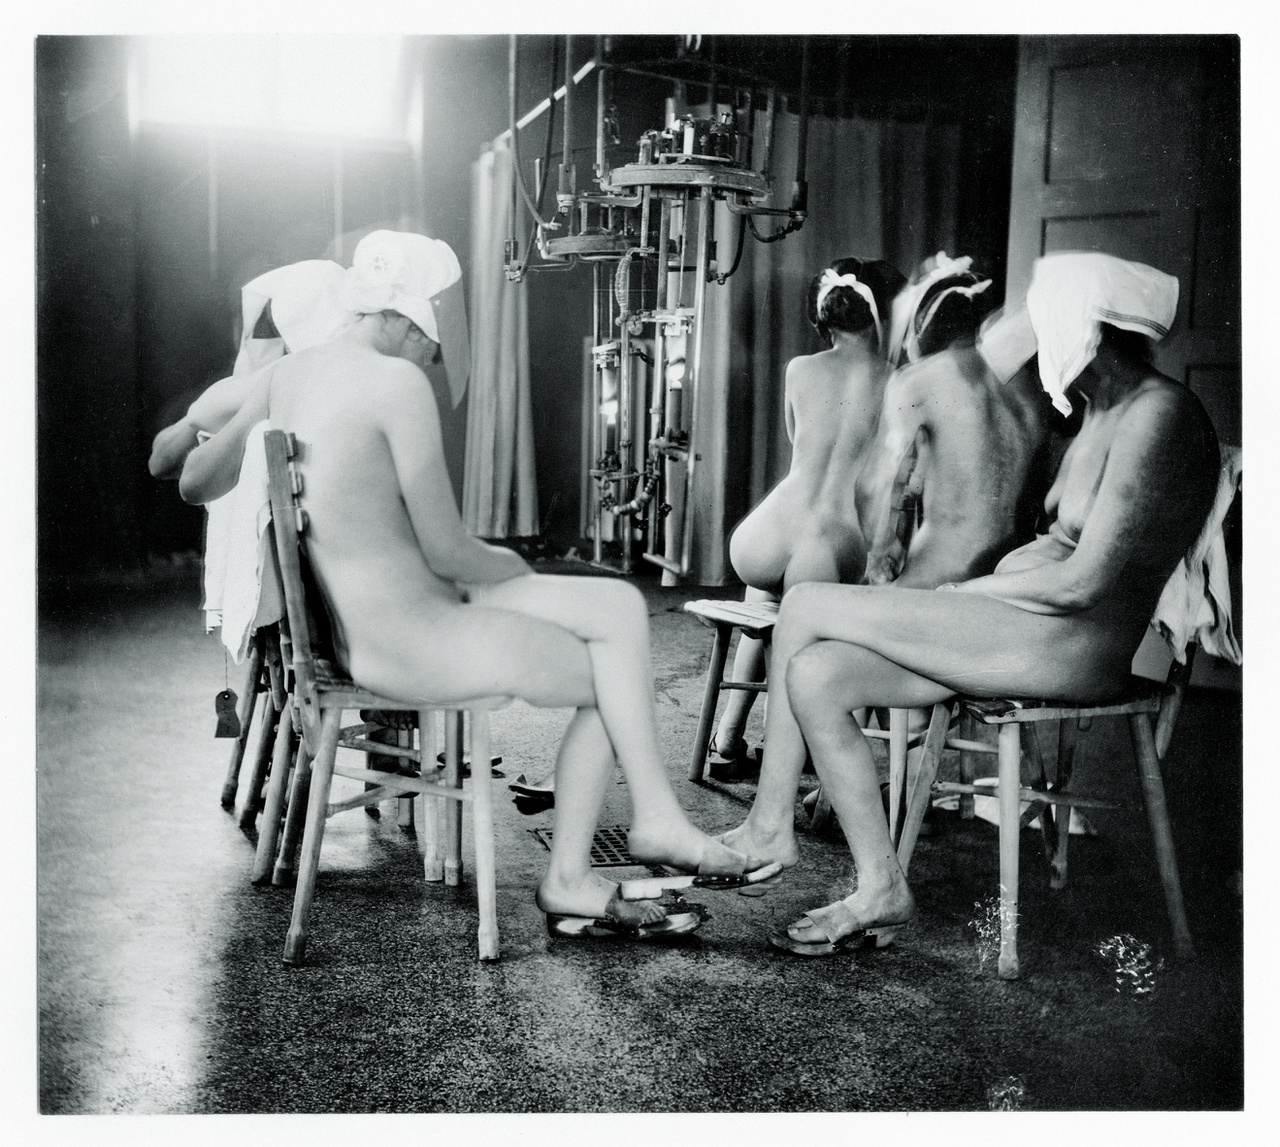 Nicolai Howalt fent említett munkájához kapcsolható ez a régi fotó is: különféle bőrbetegségekben szenvedő nők fényterápiája a Finsen-intézetben, 1920-1930 körül. Zselatinos ezüst nyomat a Koppenhágai Egyetem Orvosi Múzeumából.